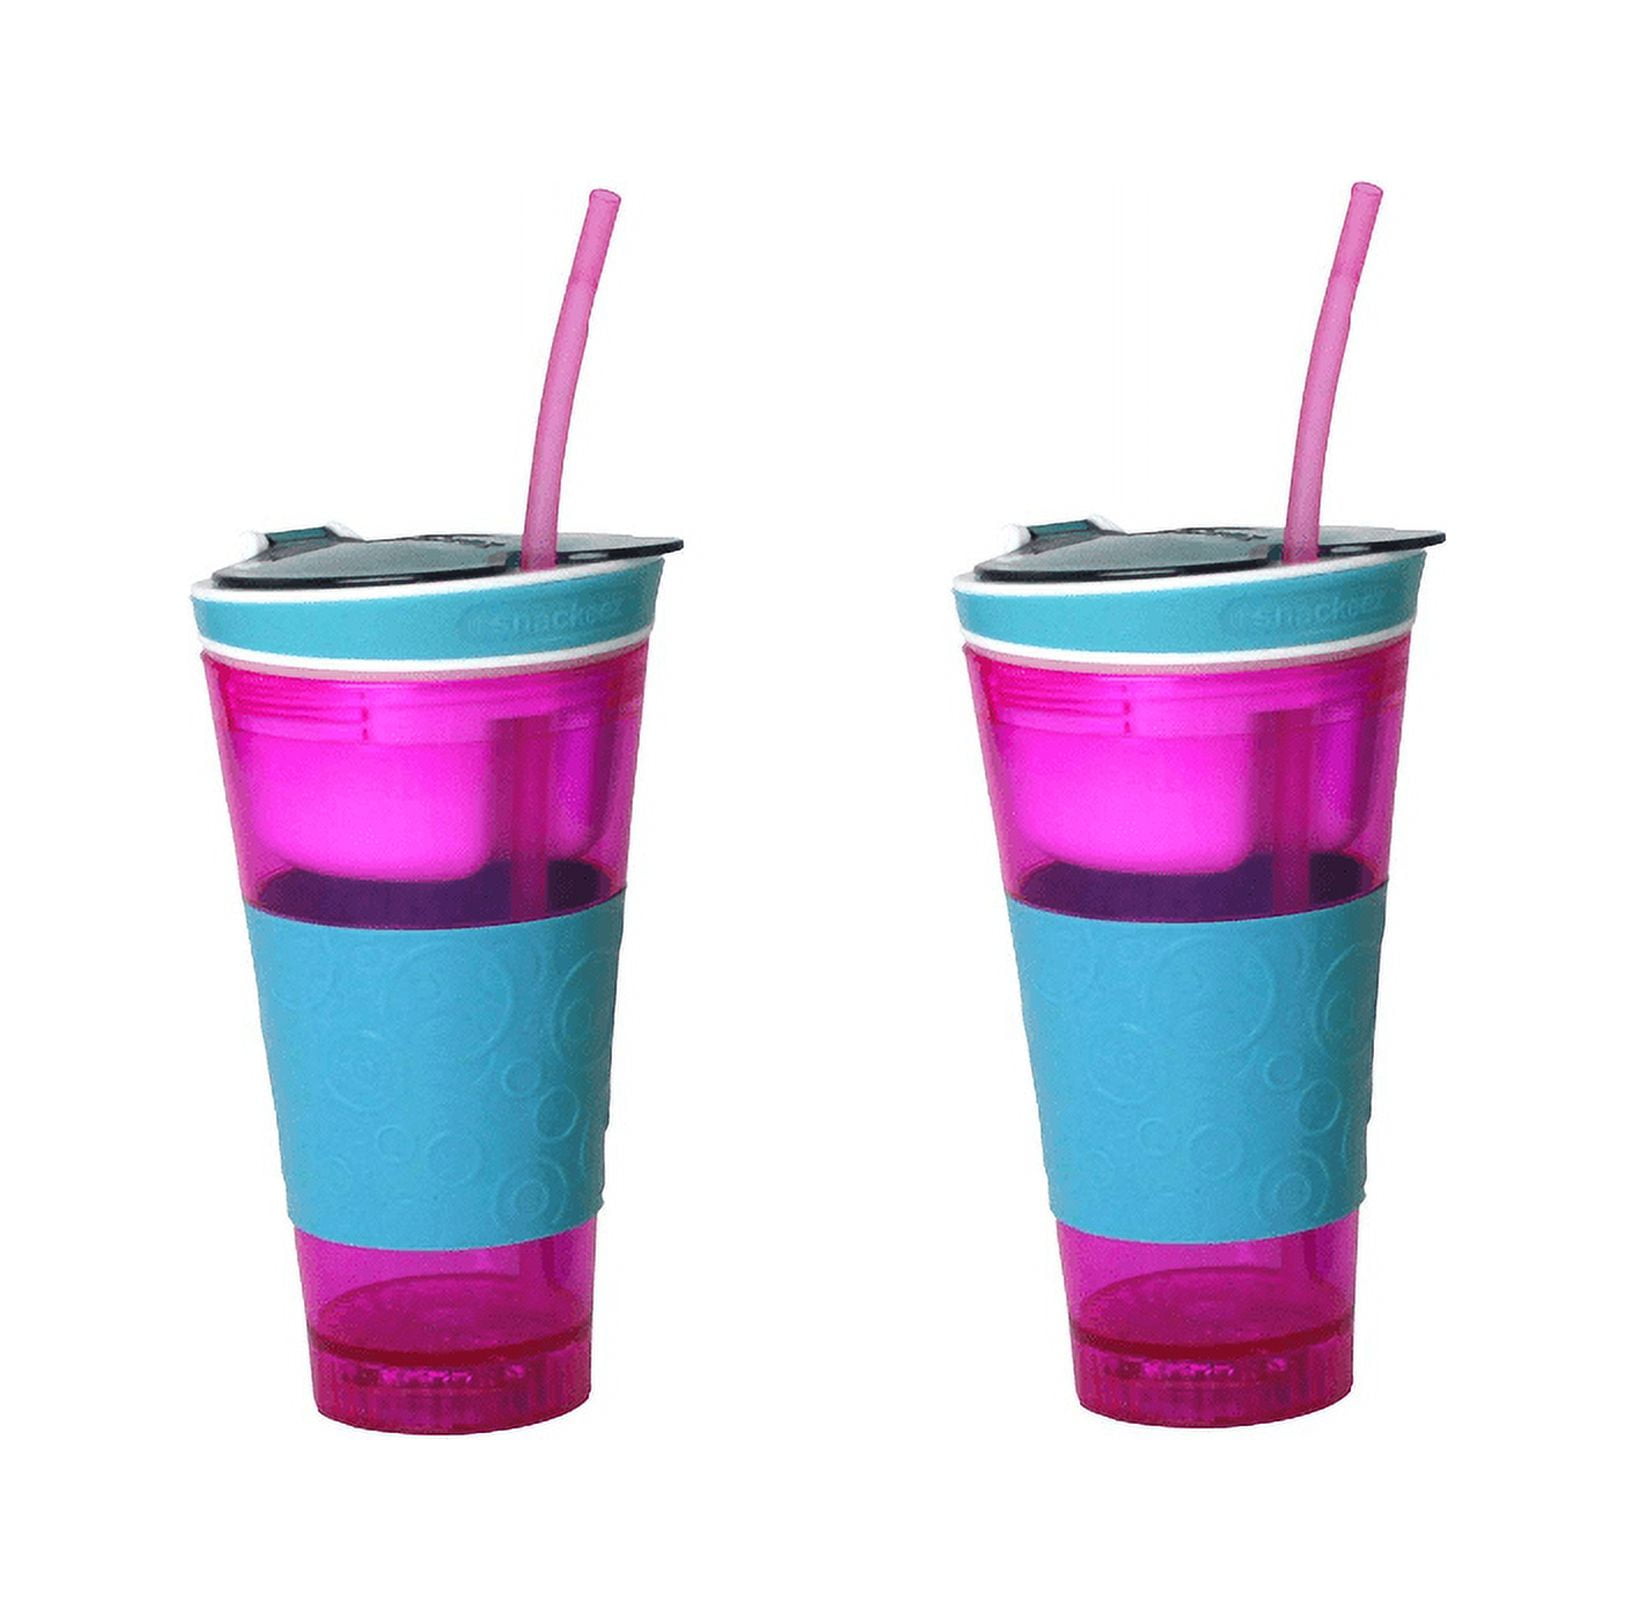 Snackeez™ 2-in-1 Snack Cup - Pink/Blue, 24 oz - Harris Teeter